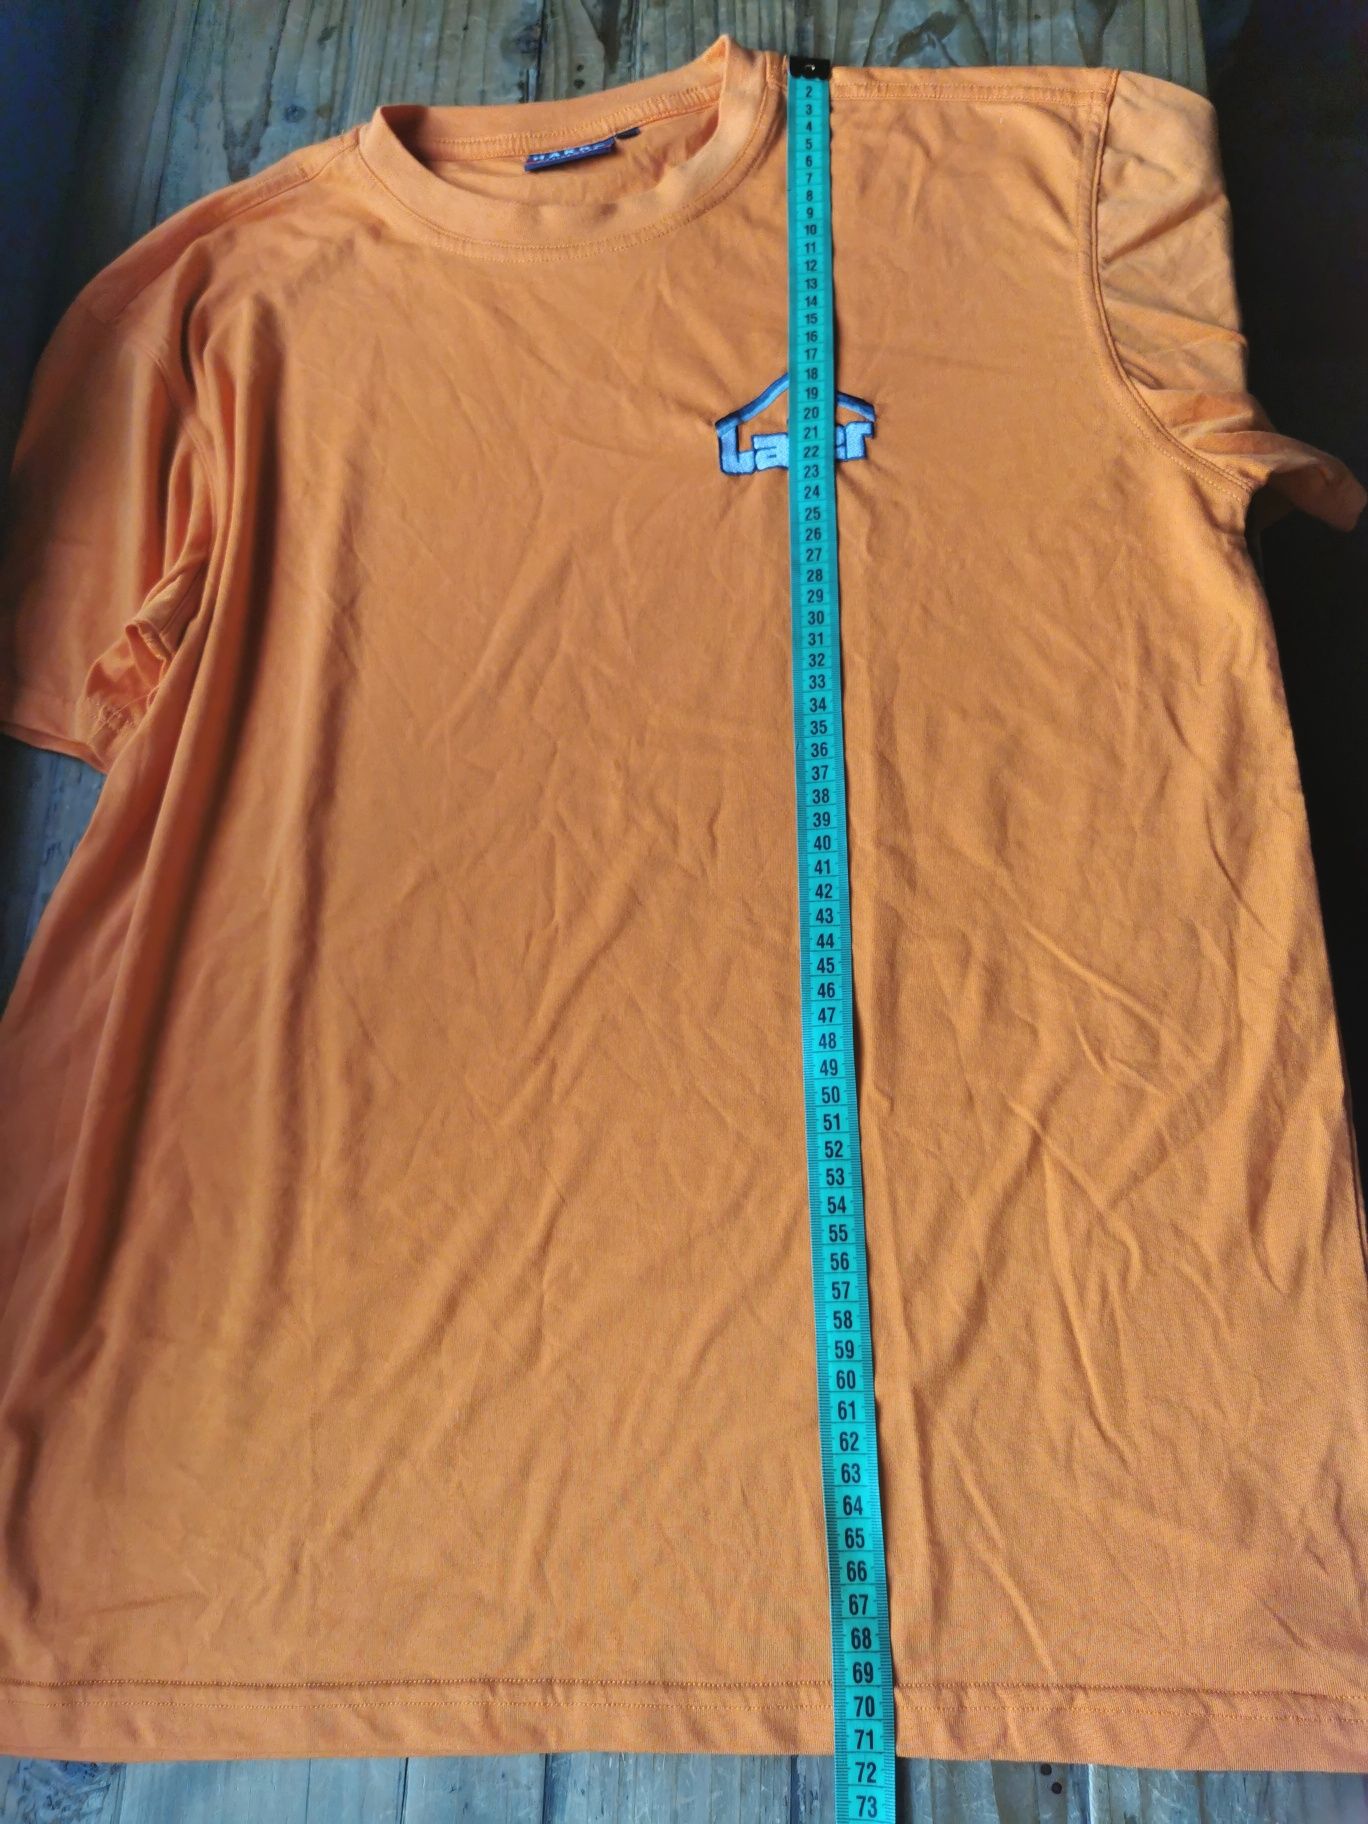 Pomarańczowa koszulka T-shirt, rozmiar L